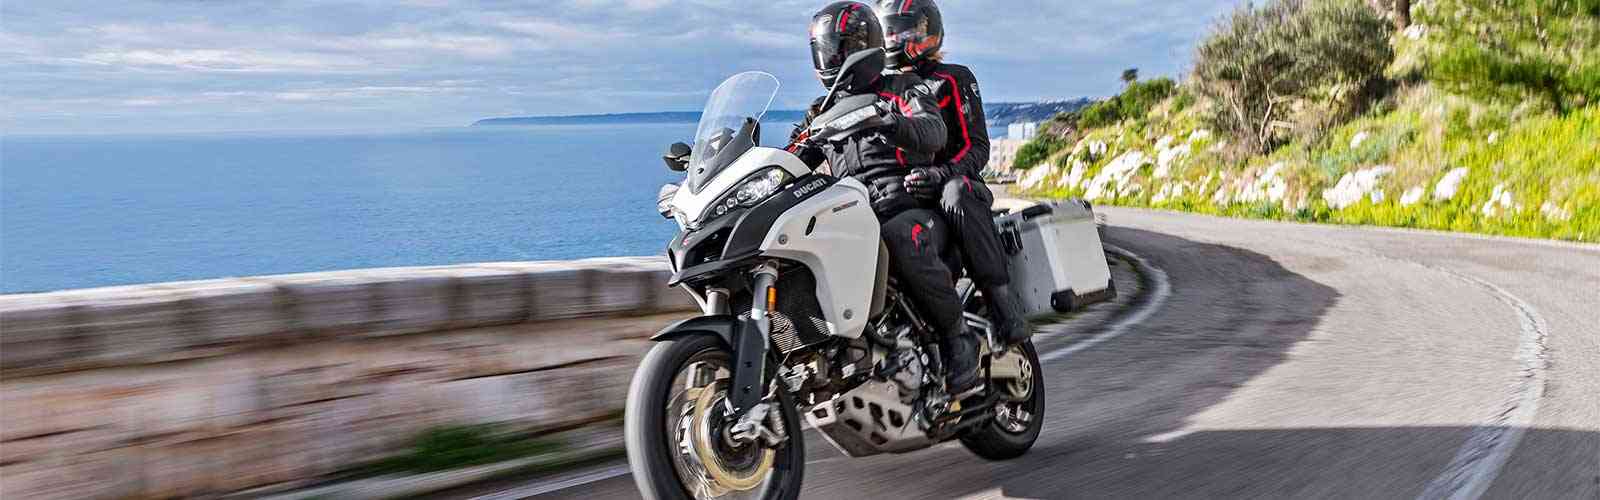 Corsica Moto Raid sulle strade più spettacolari dell'isola